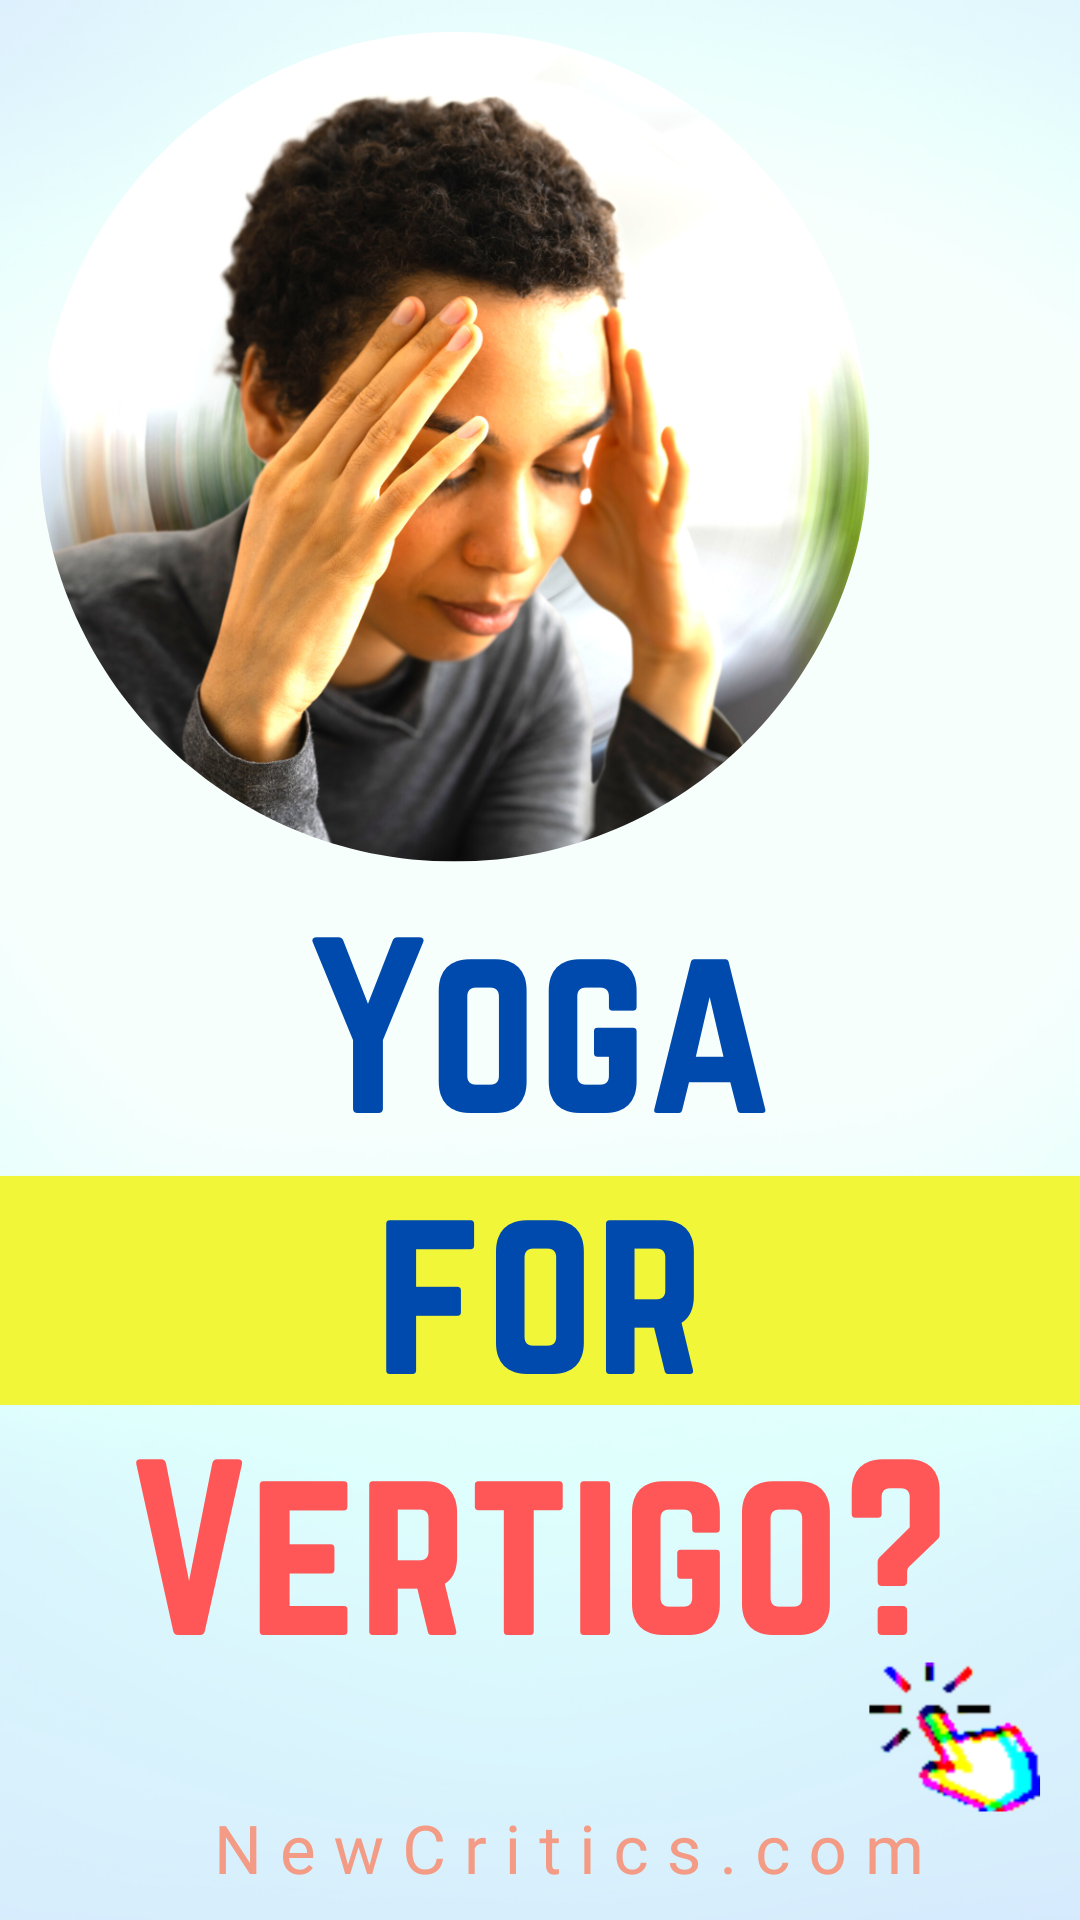 Yoga For Vertigo / Canva